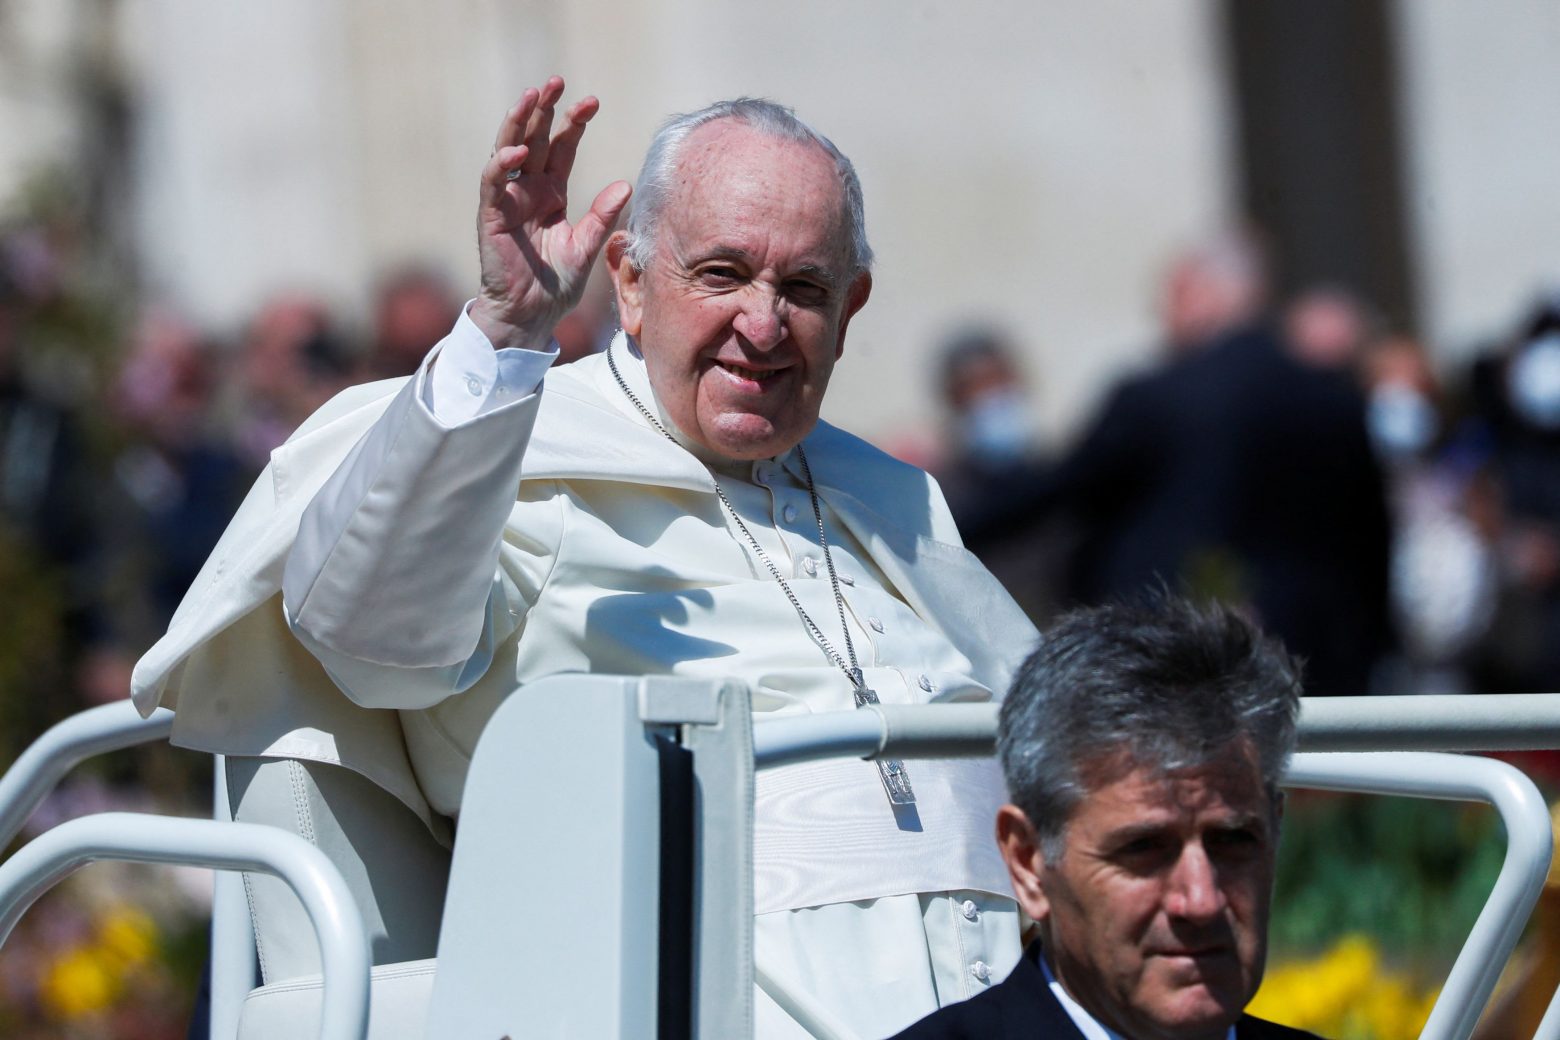 Πάπας: «Να μη συνηθίσουμε στον πόλεμο» - Το πασχαλινό μήνυμα του Ποντίφικα με αναφορά στην Ουκρανία